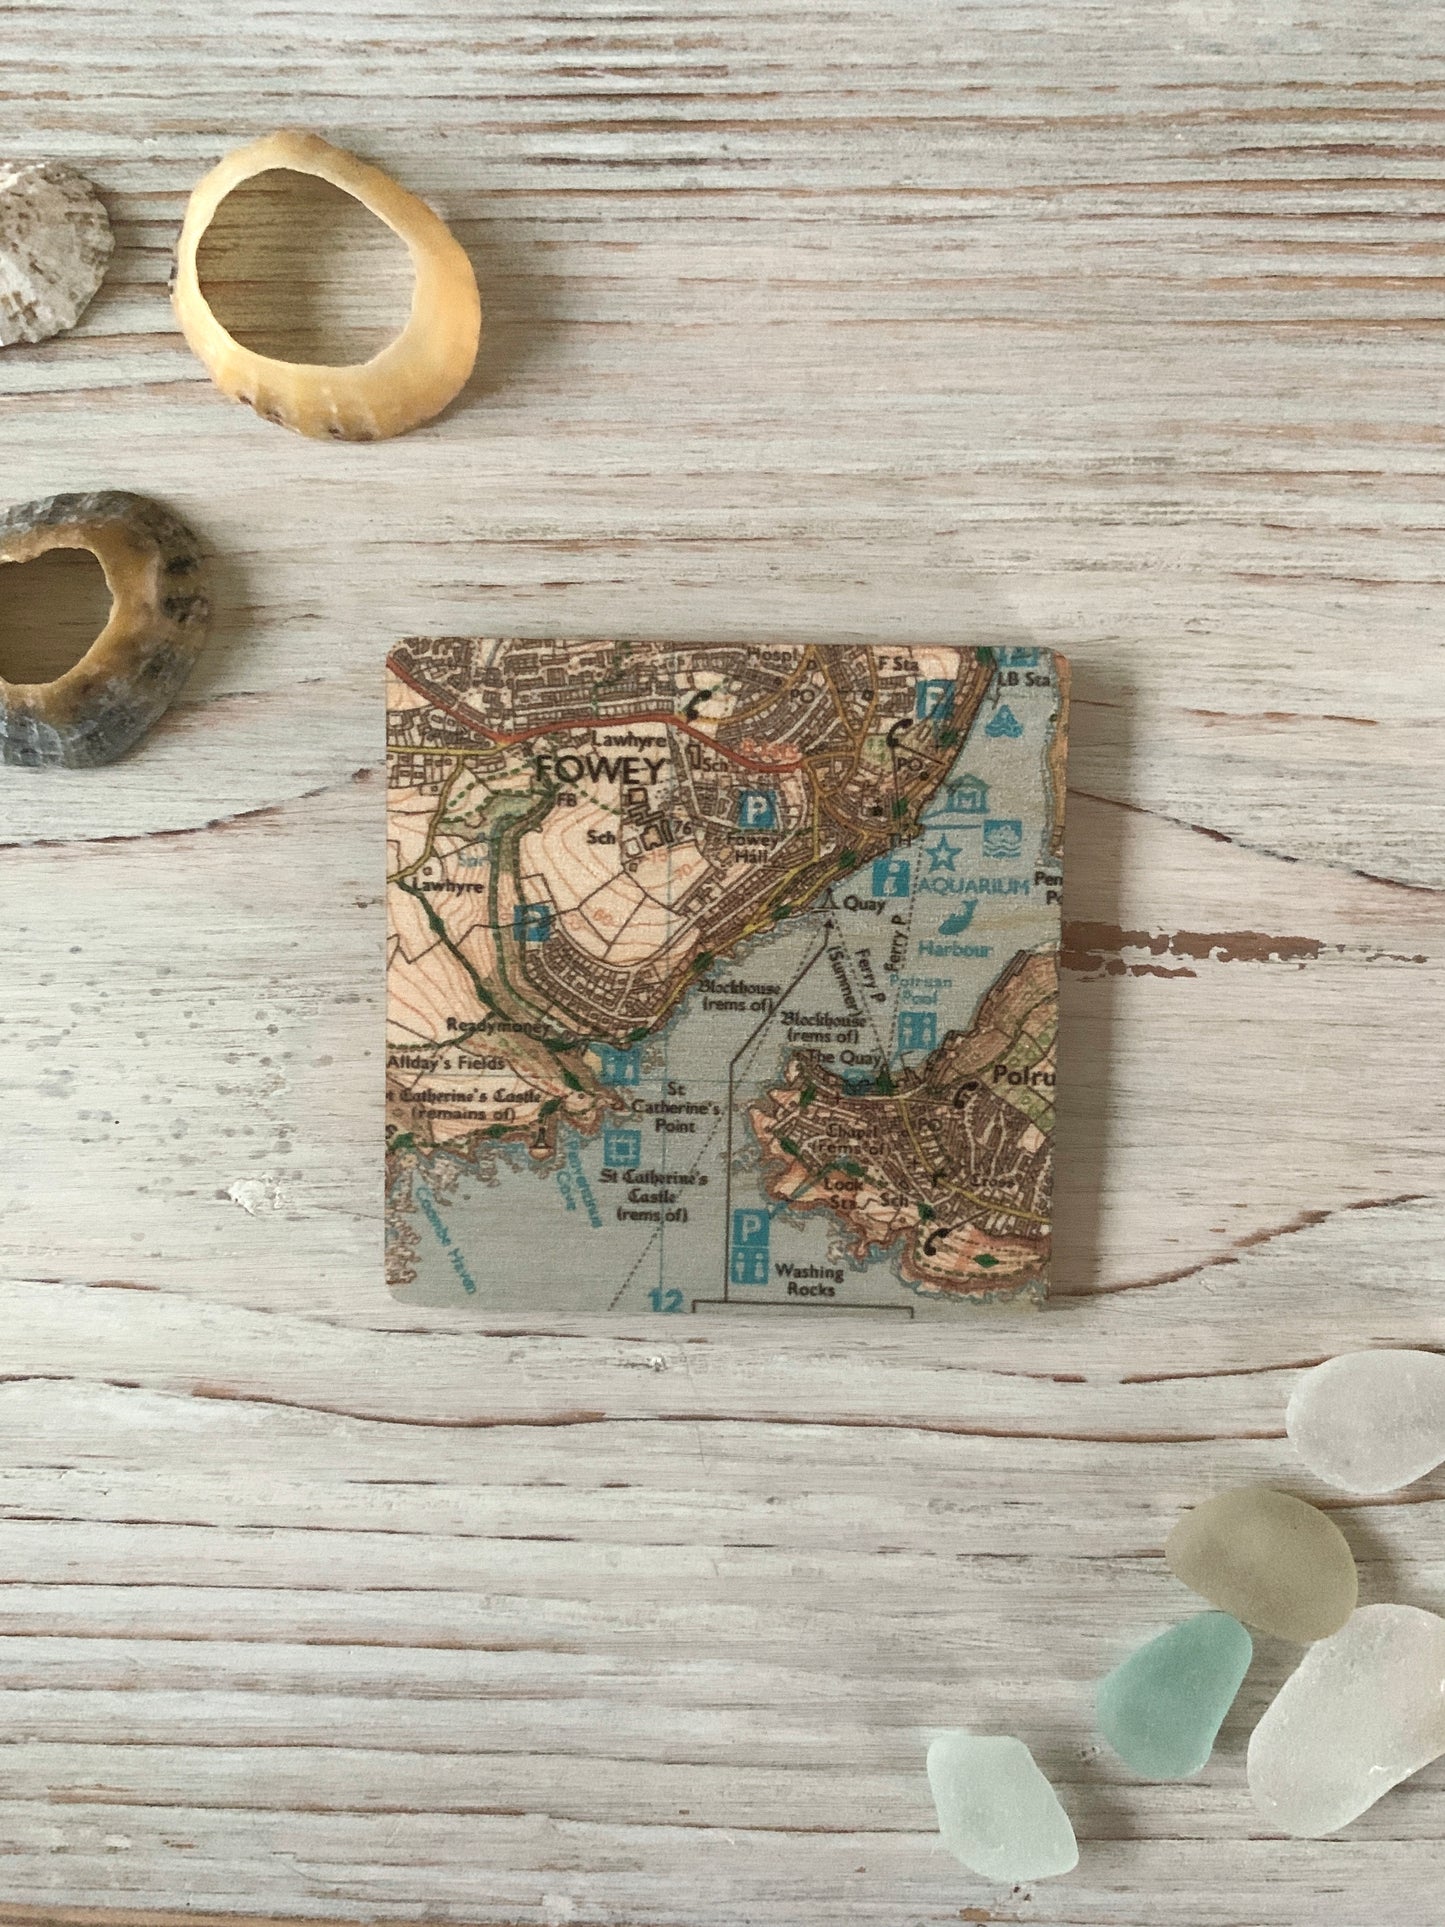 wooden fowey map magnet